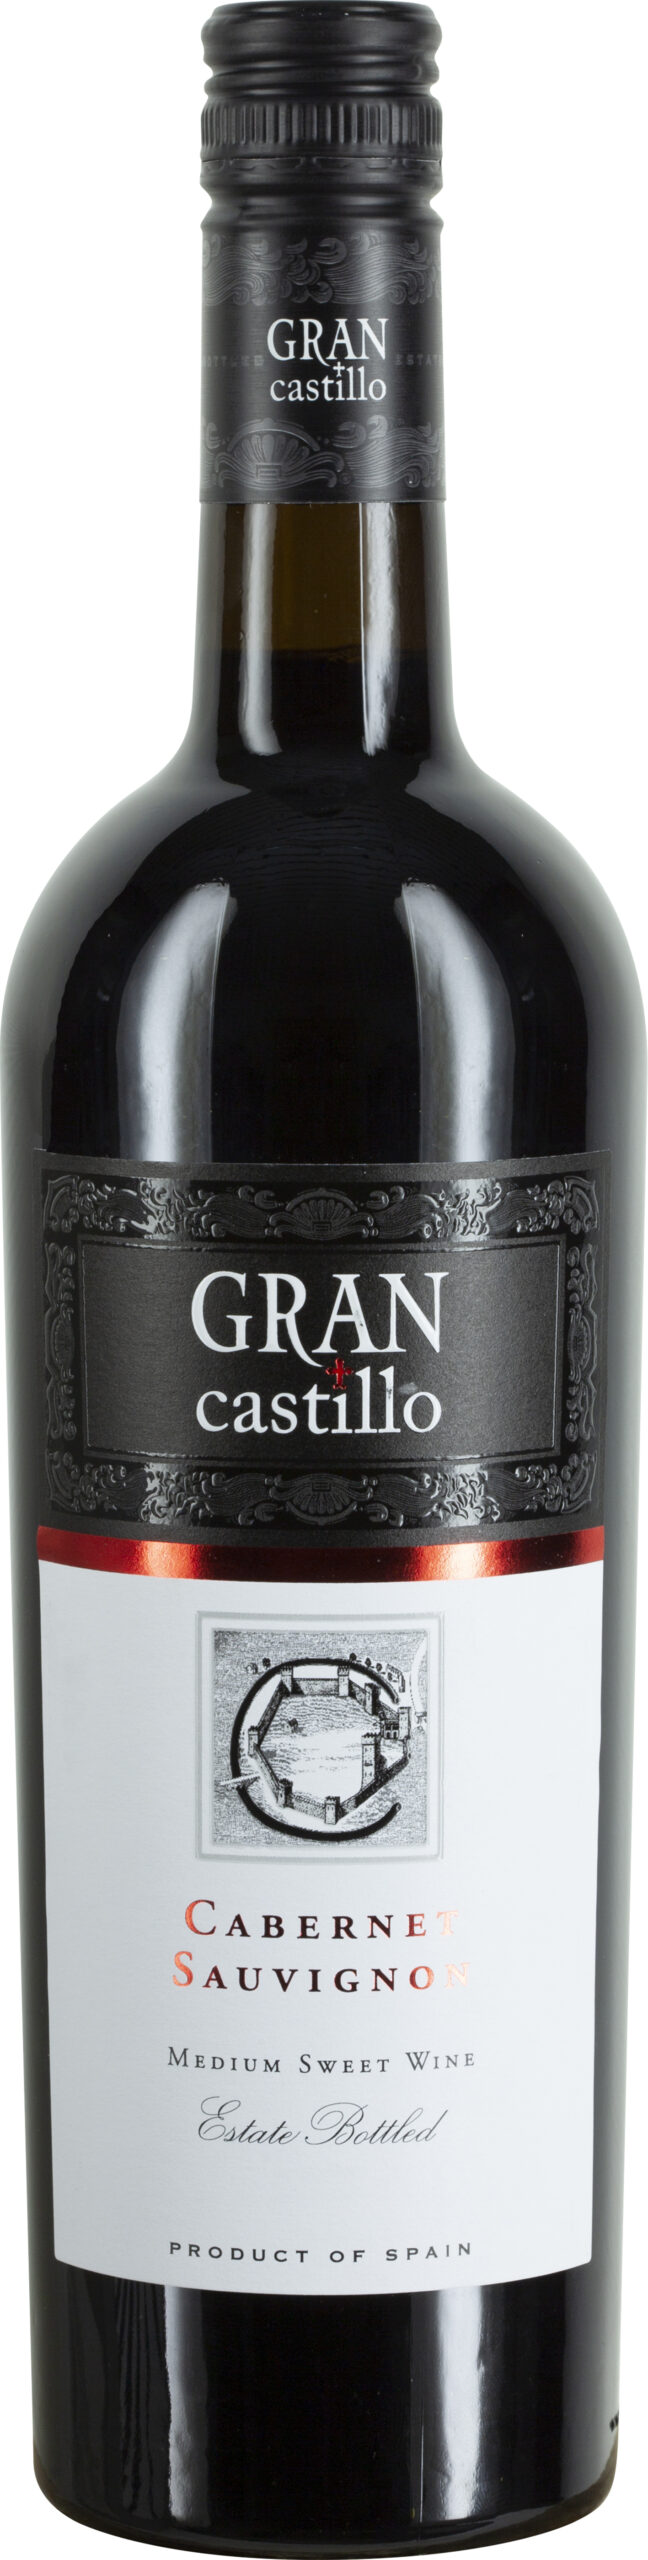 Gran Castillo, - Valencia DOP Schenk Weine Sauvignon Cabernet